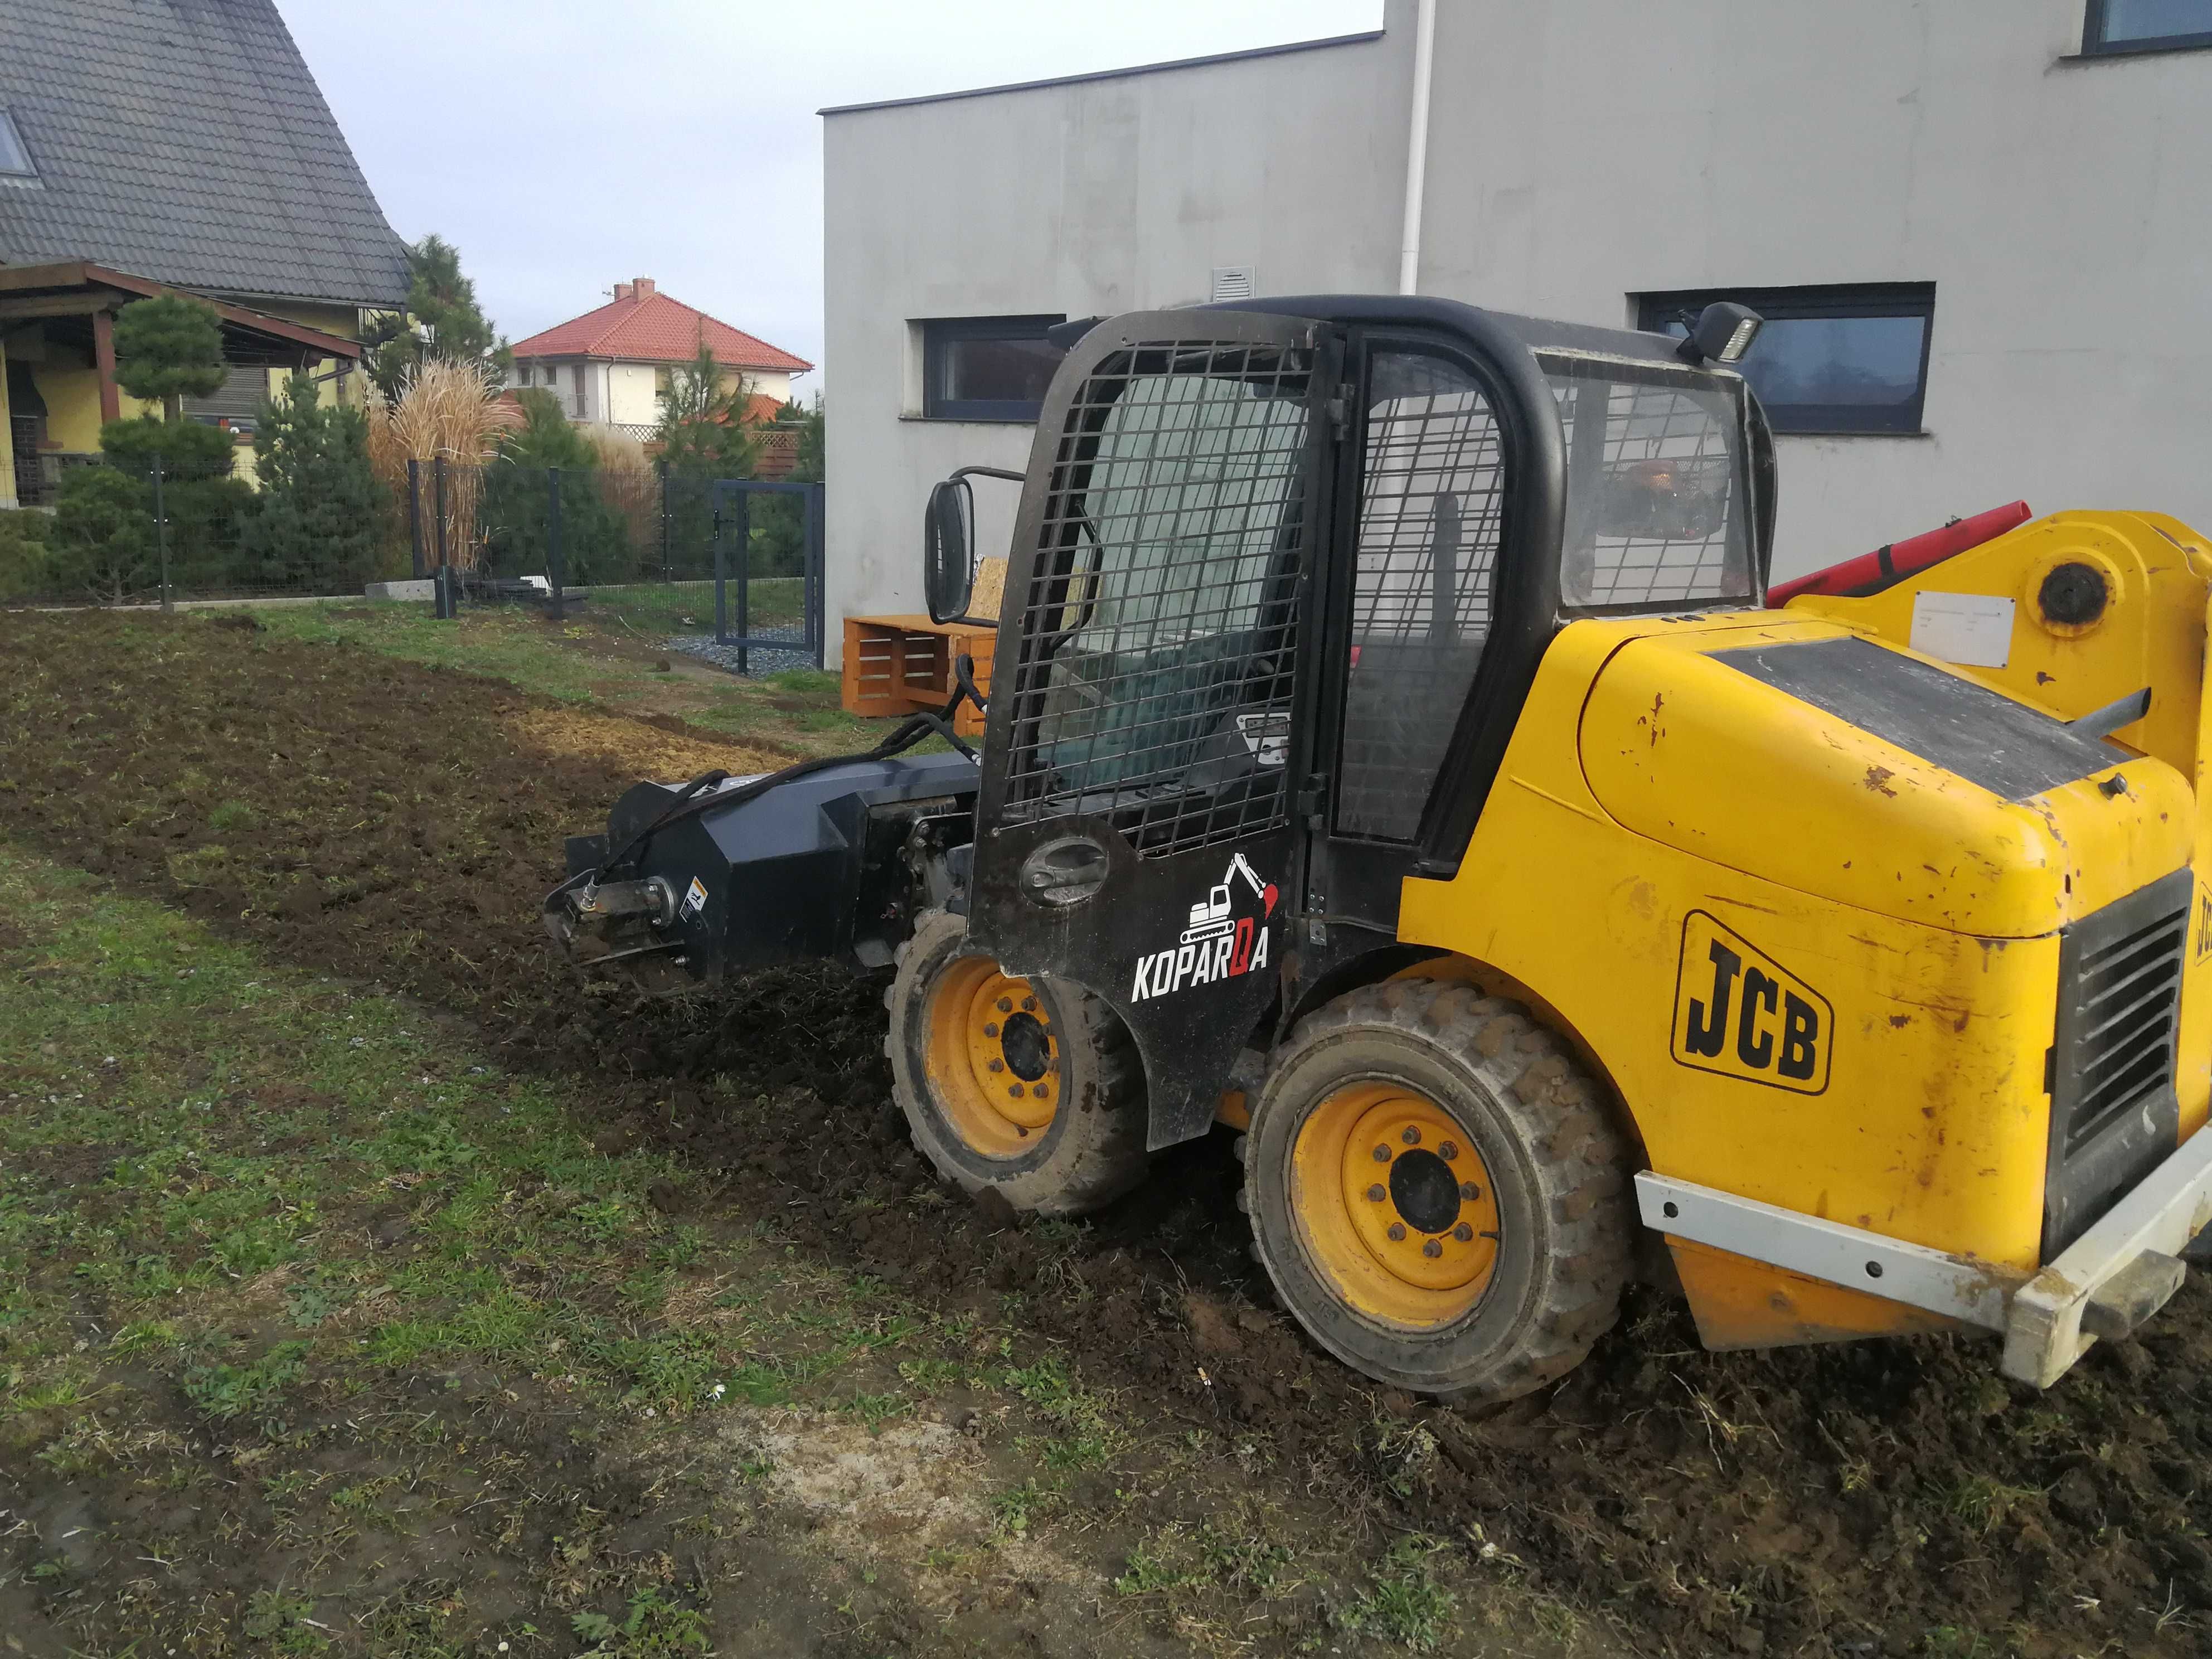 Prace ziemne usługi minikoparka Wrocław Bobcat wykopy wyburzenia